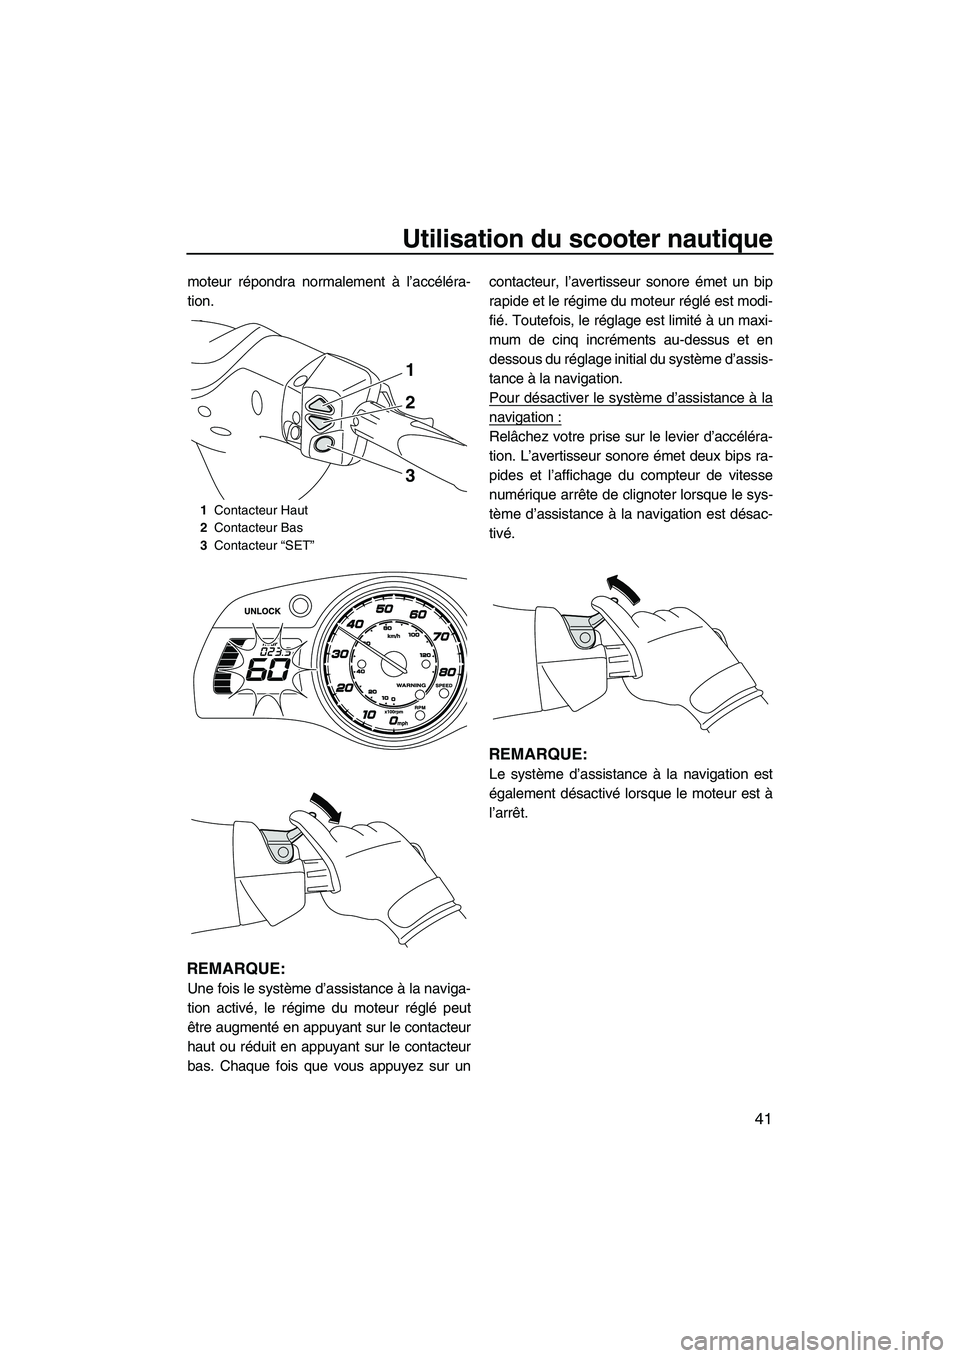 YAMAHA FX HO 2013  Notices Demploi (in French) Utilisation du scooter nautique
41
moteur répondra normalement à l’accéléra-
tion.
REMARQUE:
Une fois le système d’assistance à la naviga-
tion activé, le régime du moteur réglé peut
êt